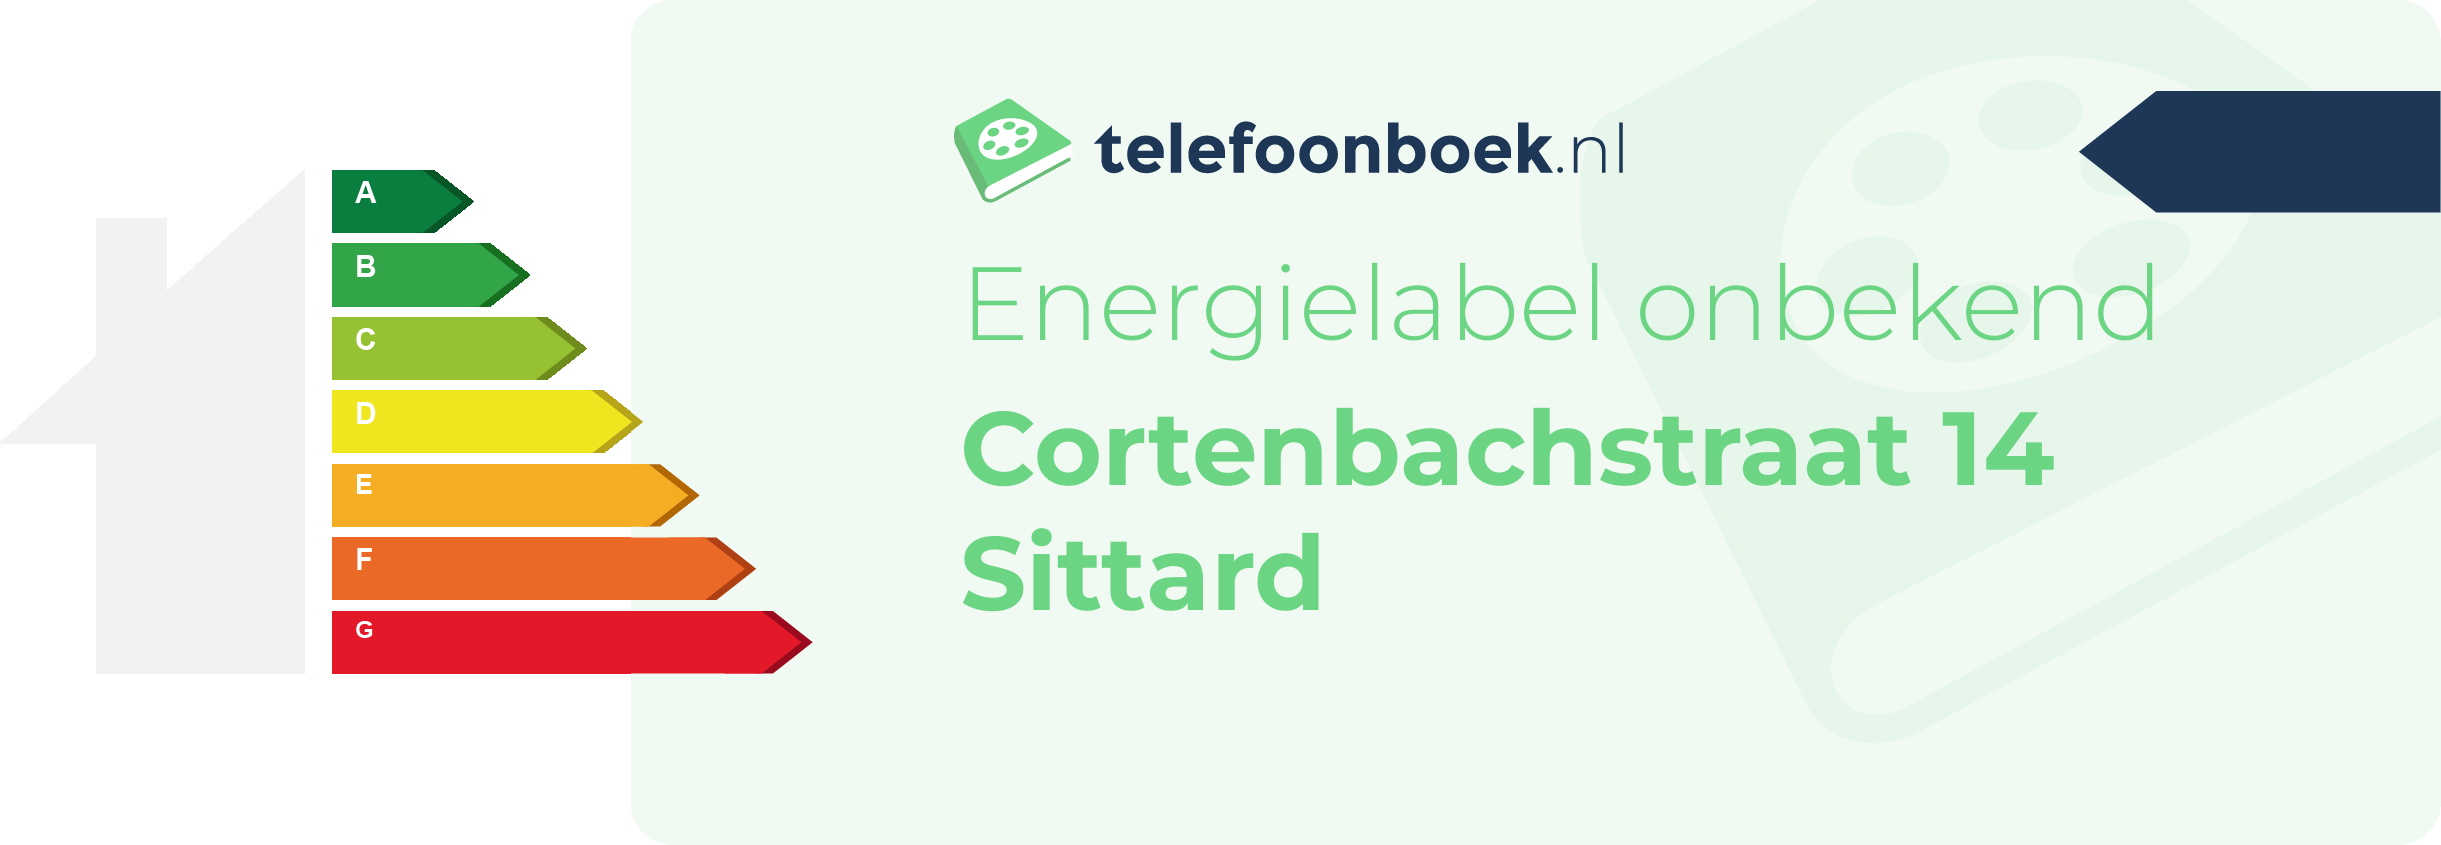 Energielabel Cortenbachstraat 14 Sittard